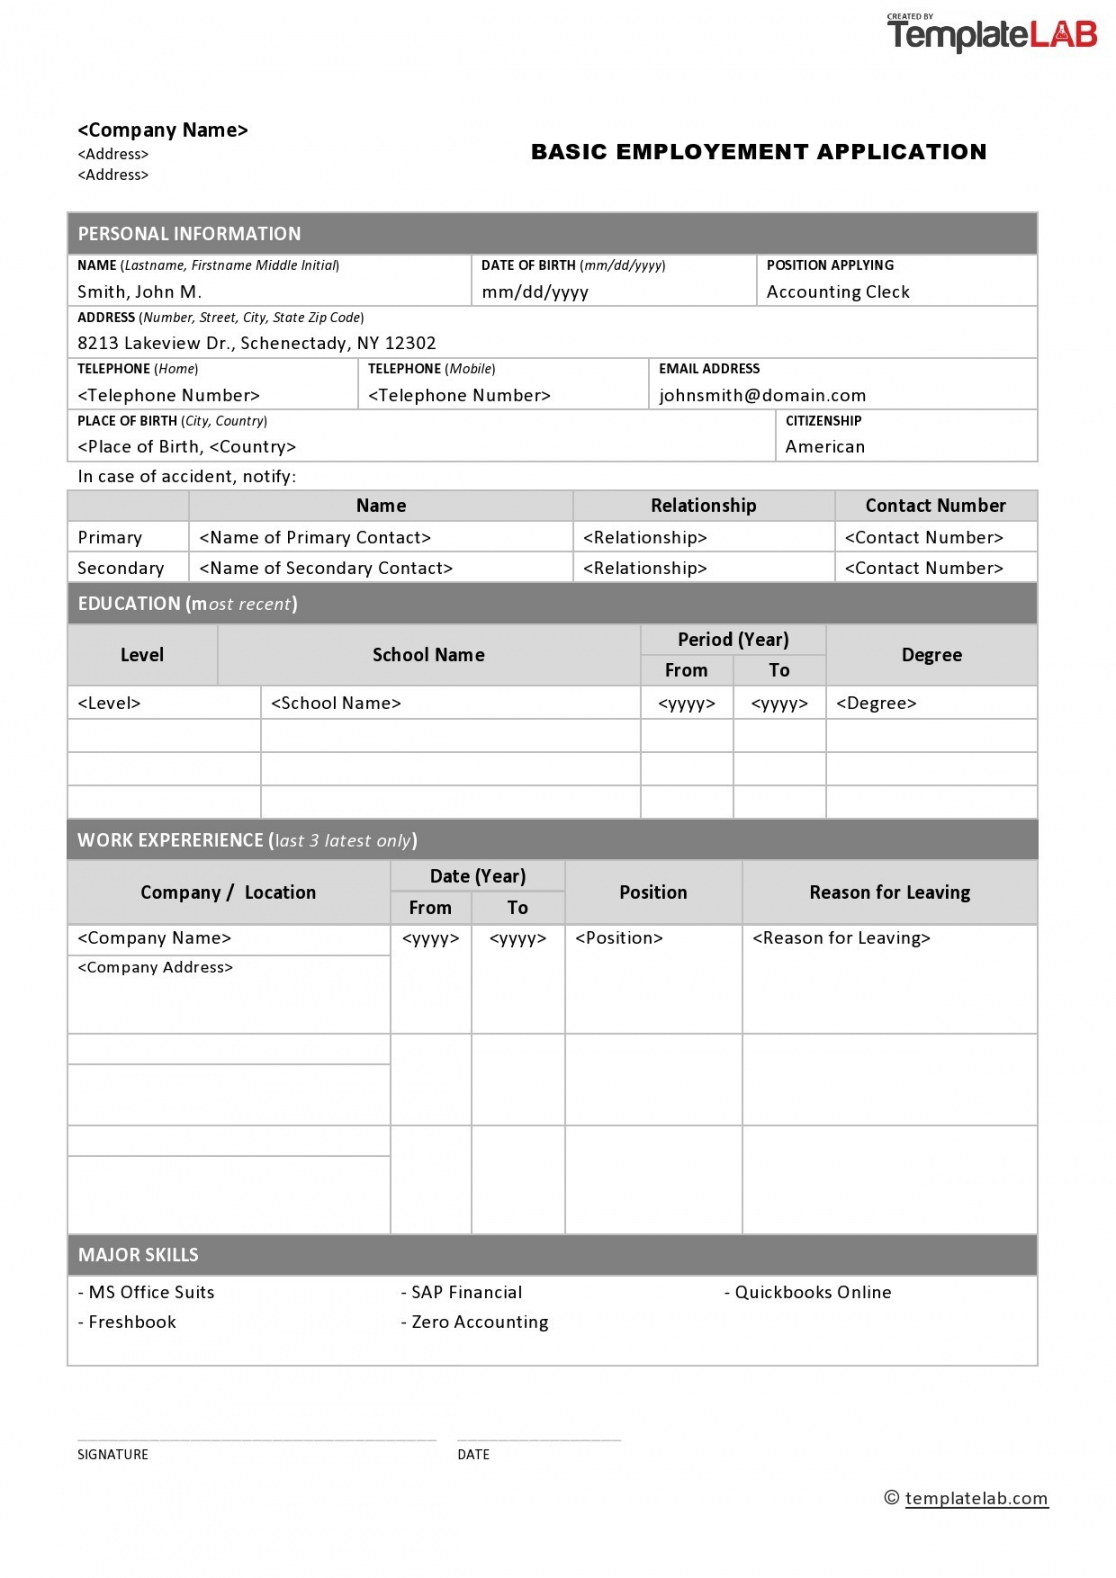 Free Printable Job Application Form - Printable -  Free Employment / Job Application Form Templates [Printable] ᐅ